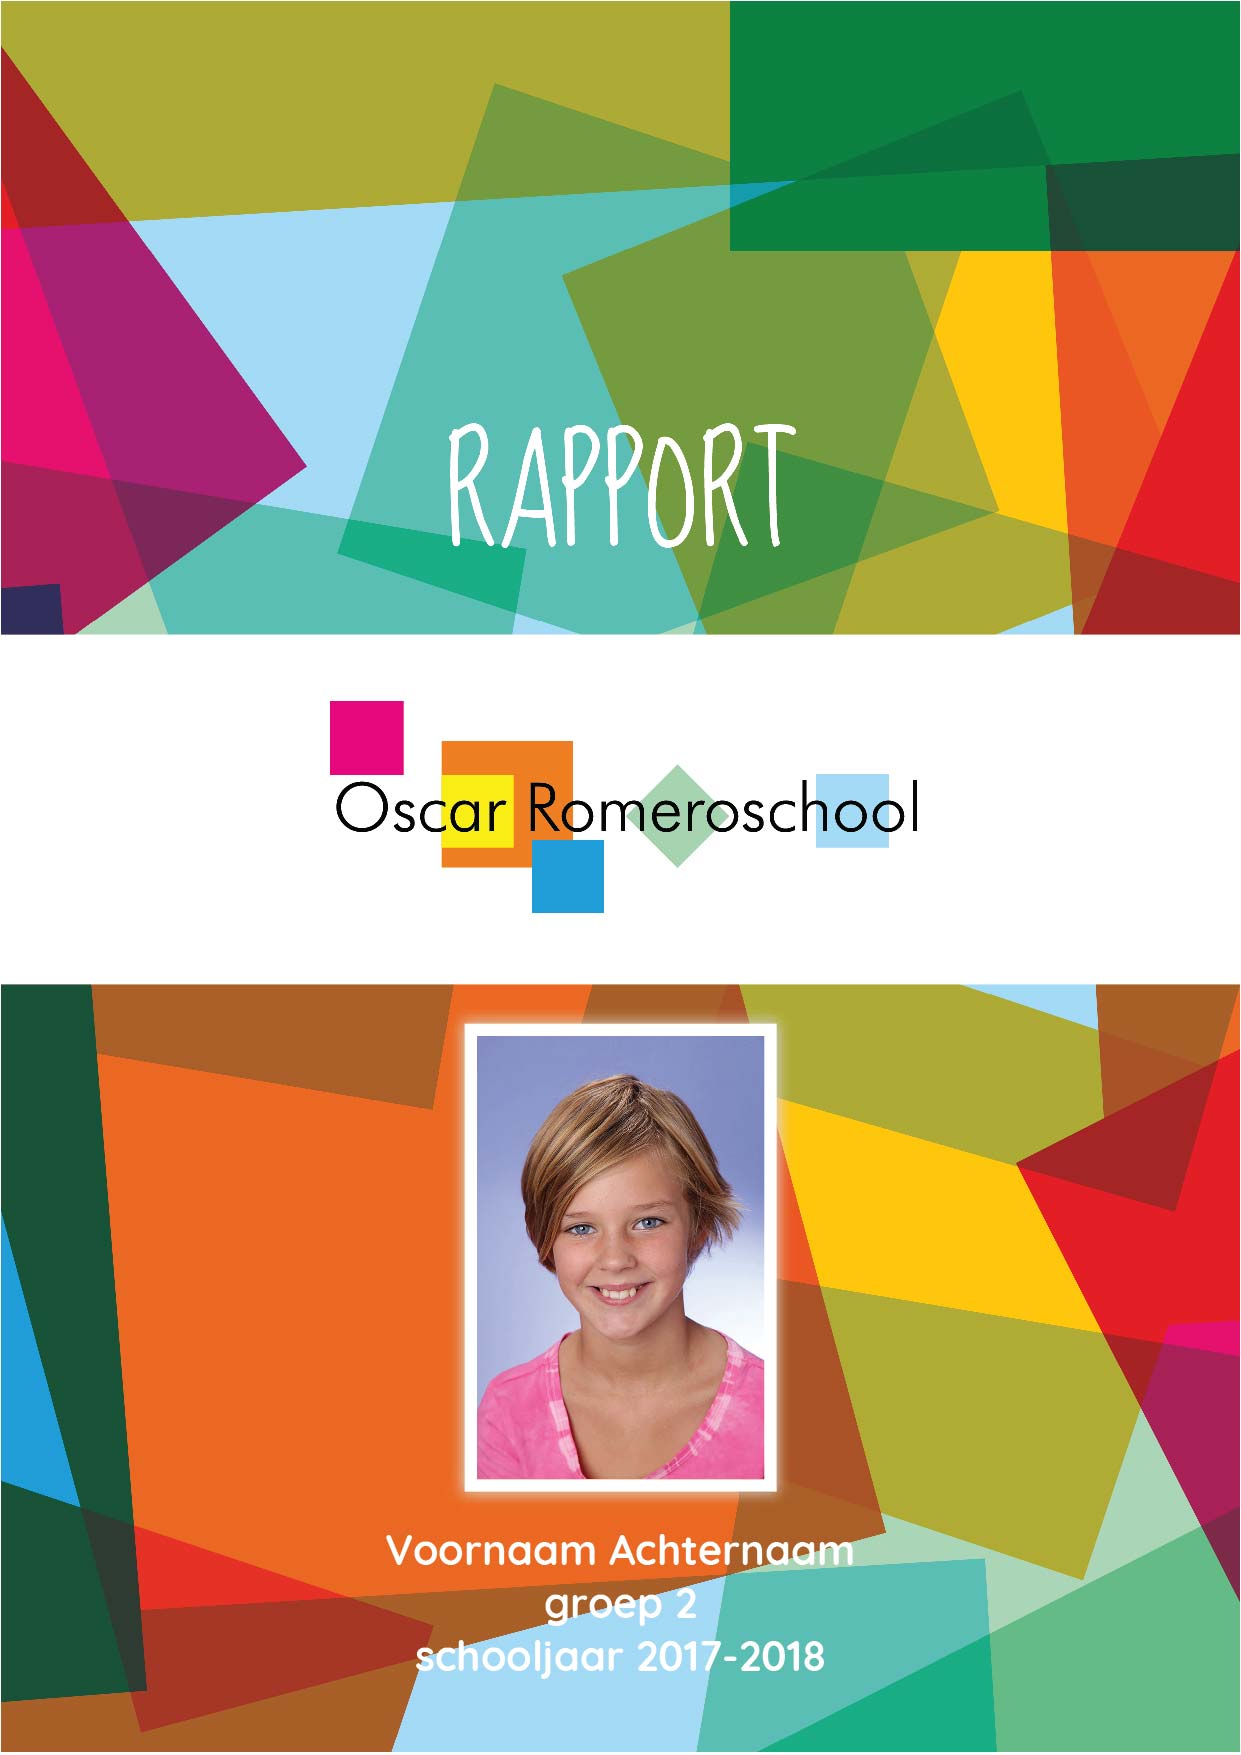 Voorbeeld rapport Oscar Romeroschool 17